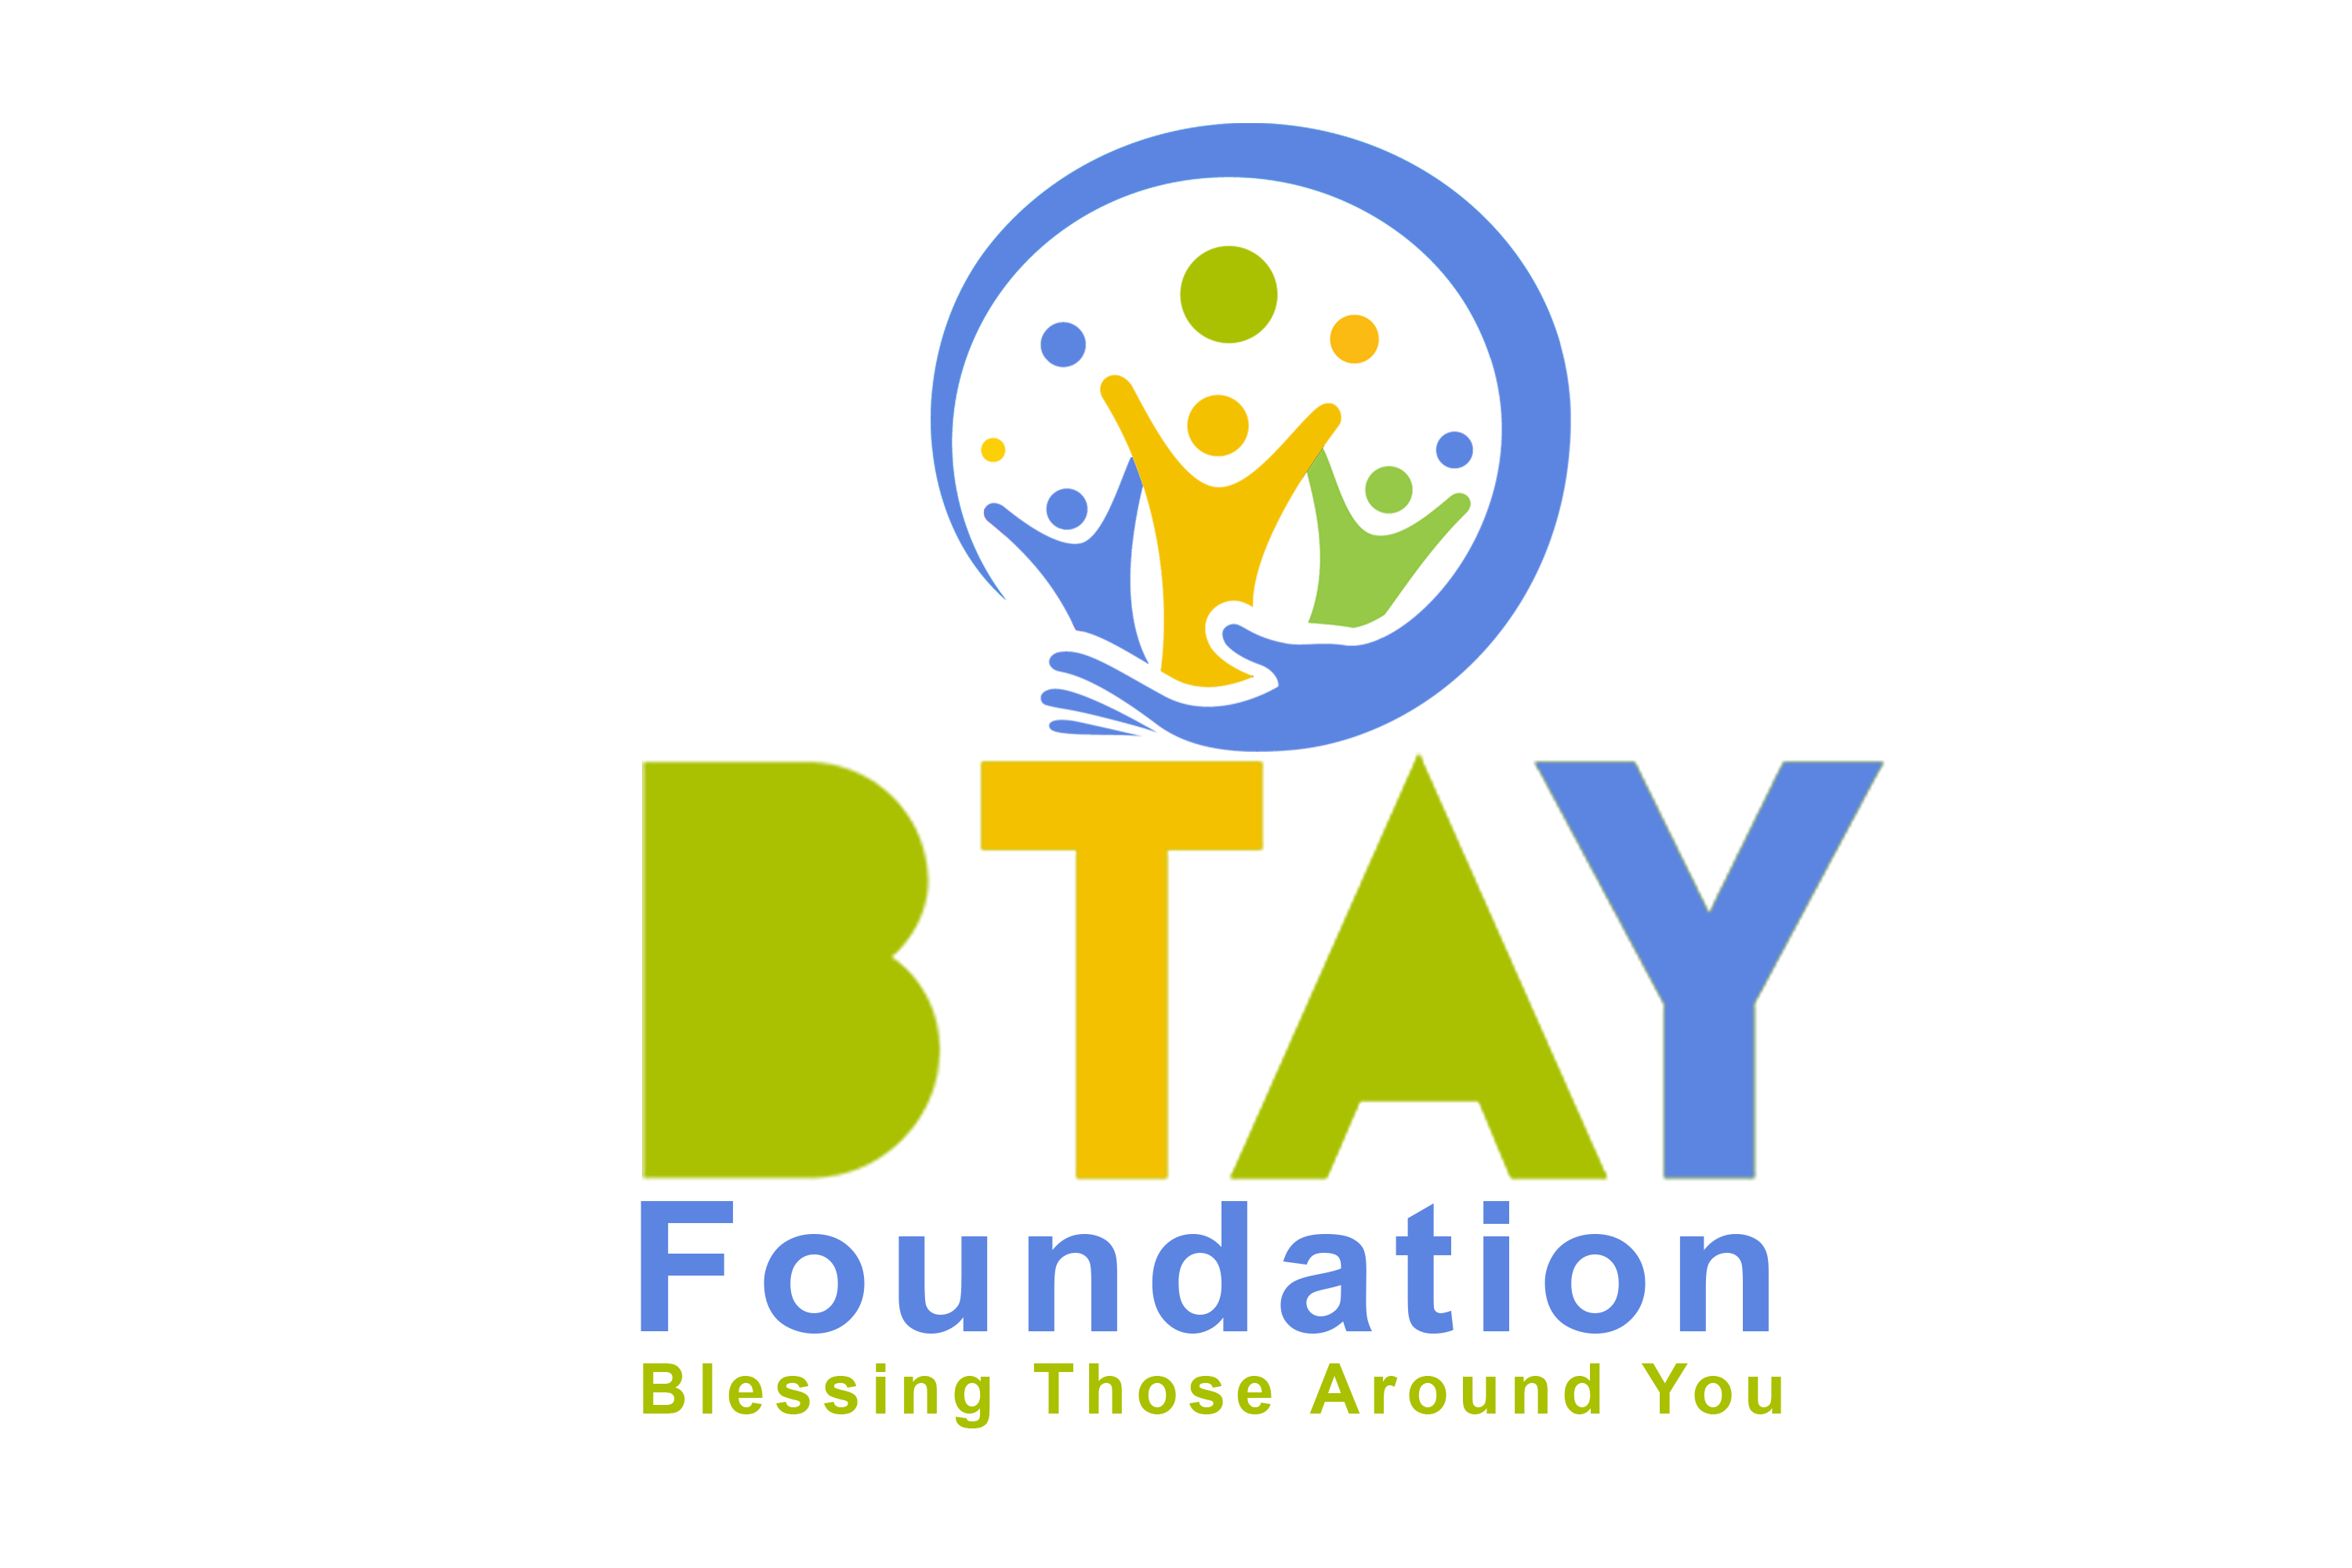 BTAY Foundation